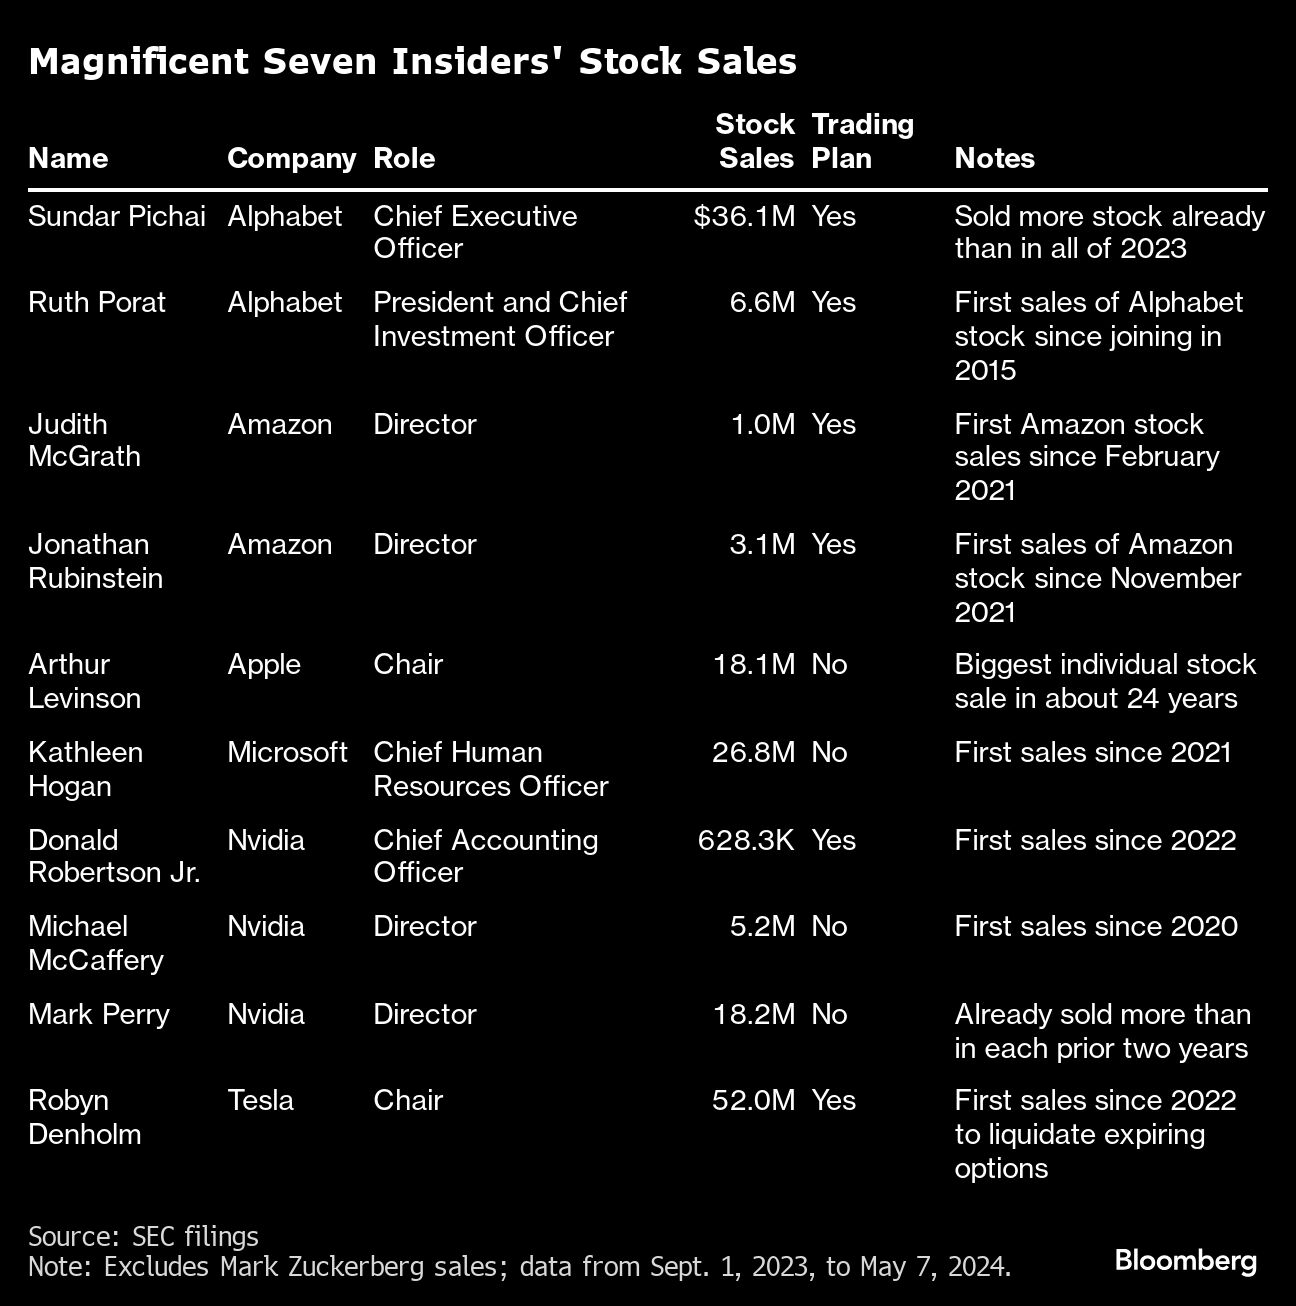 amazon, microsoft, bezos, zuckerberg lead magnificent seven insider stock sales